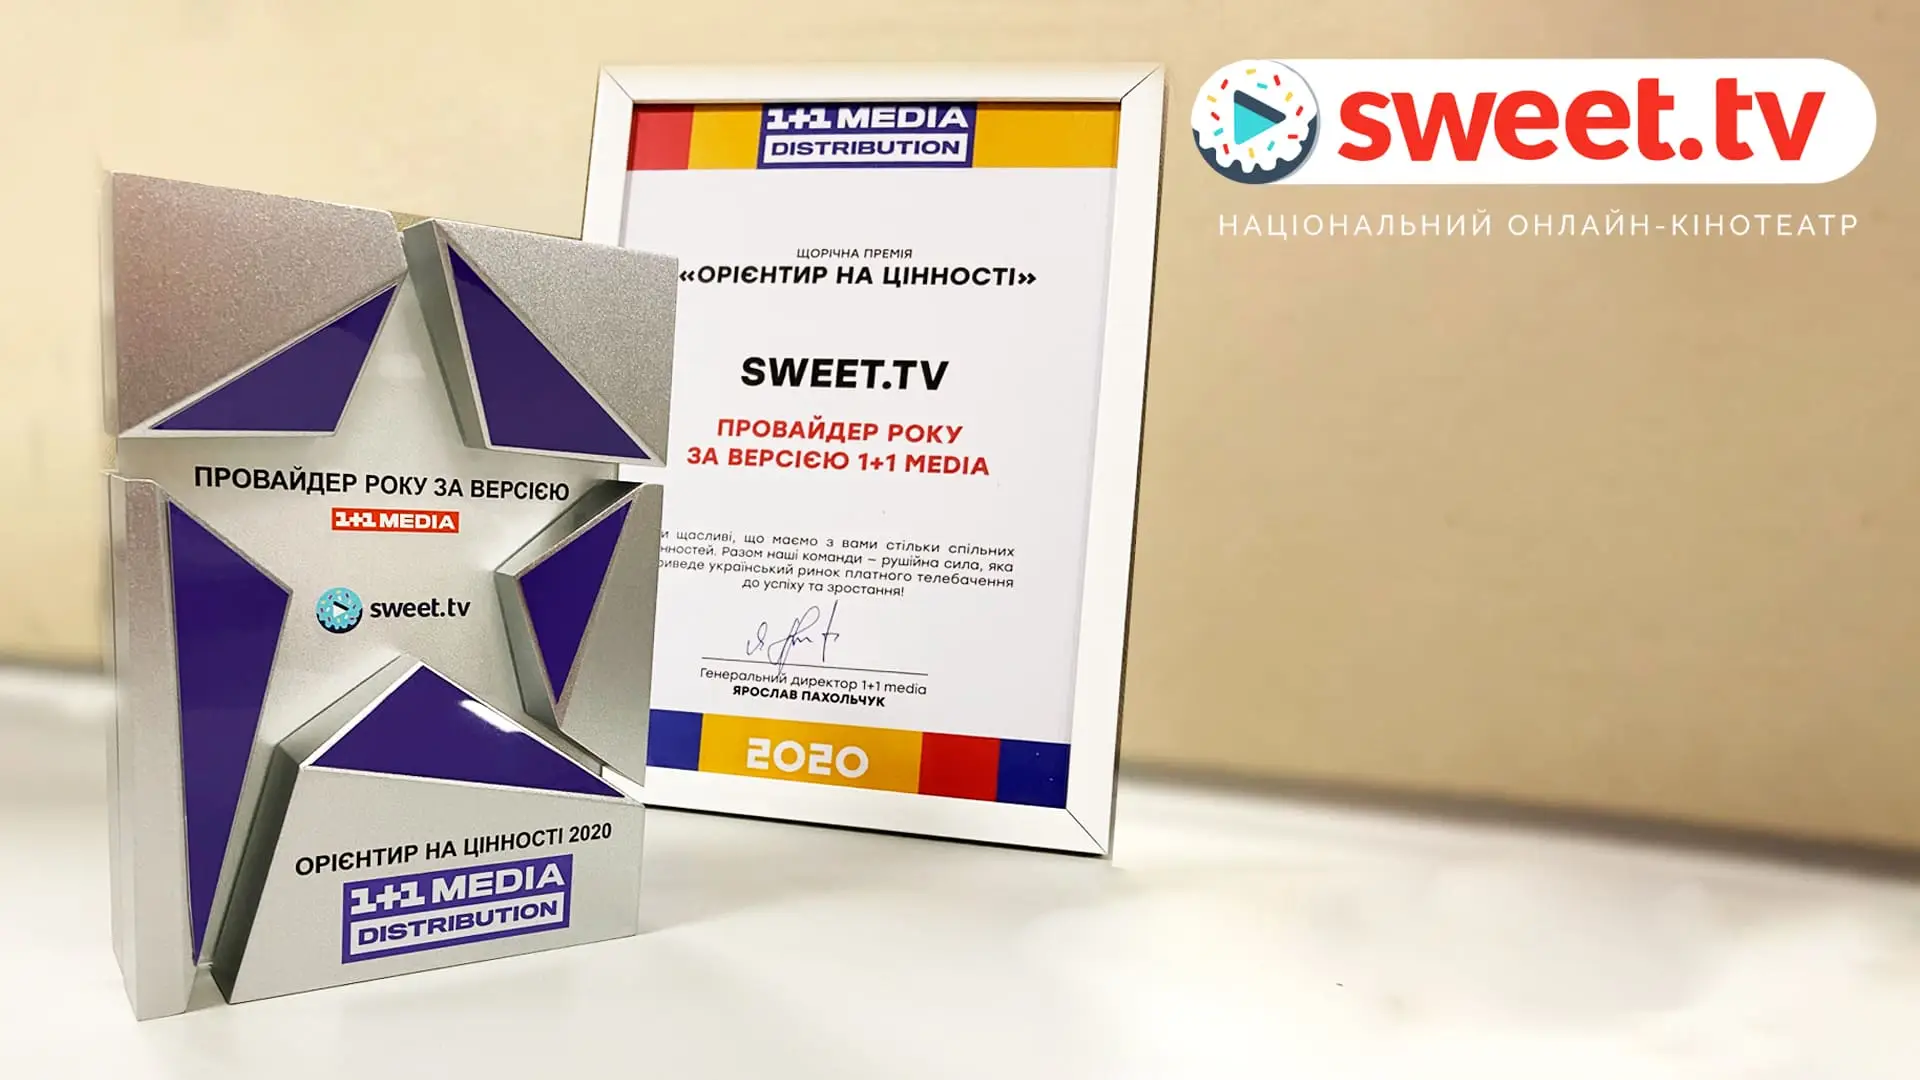 SWEET.TV — лучший провайдер 2020 по версии 1+1 MEDIA DISTRIBUTION